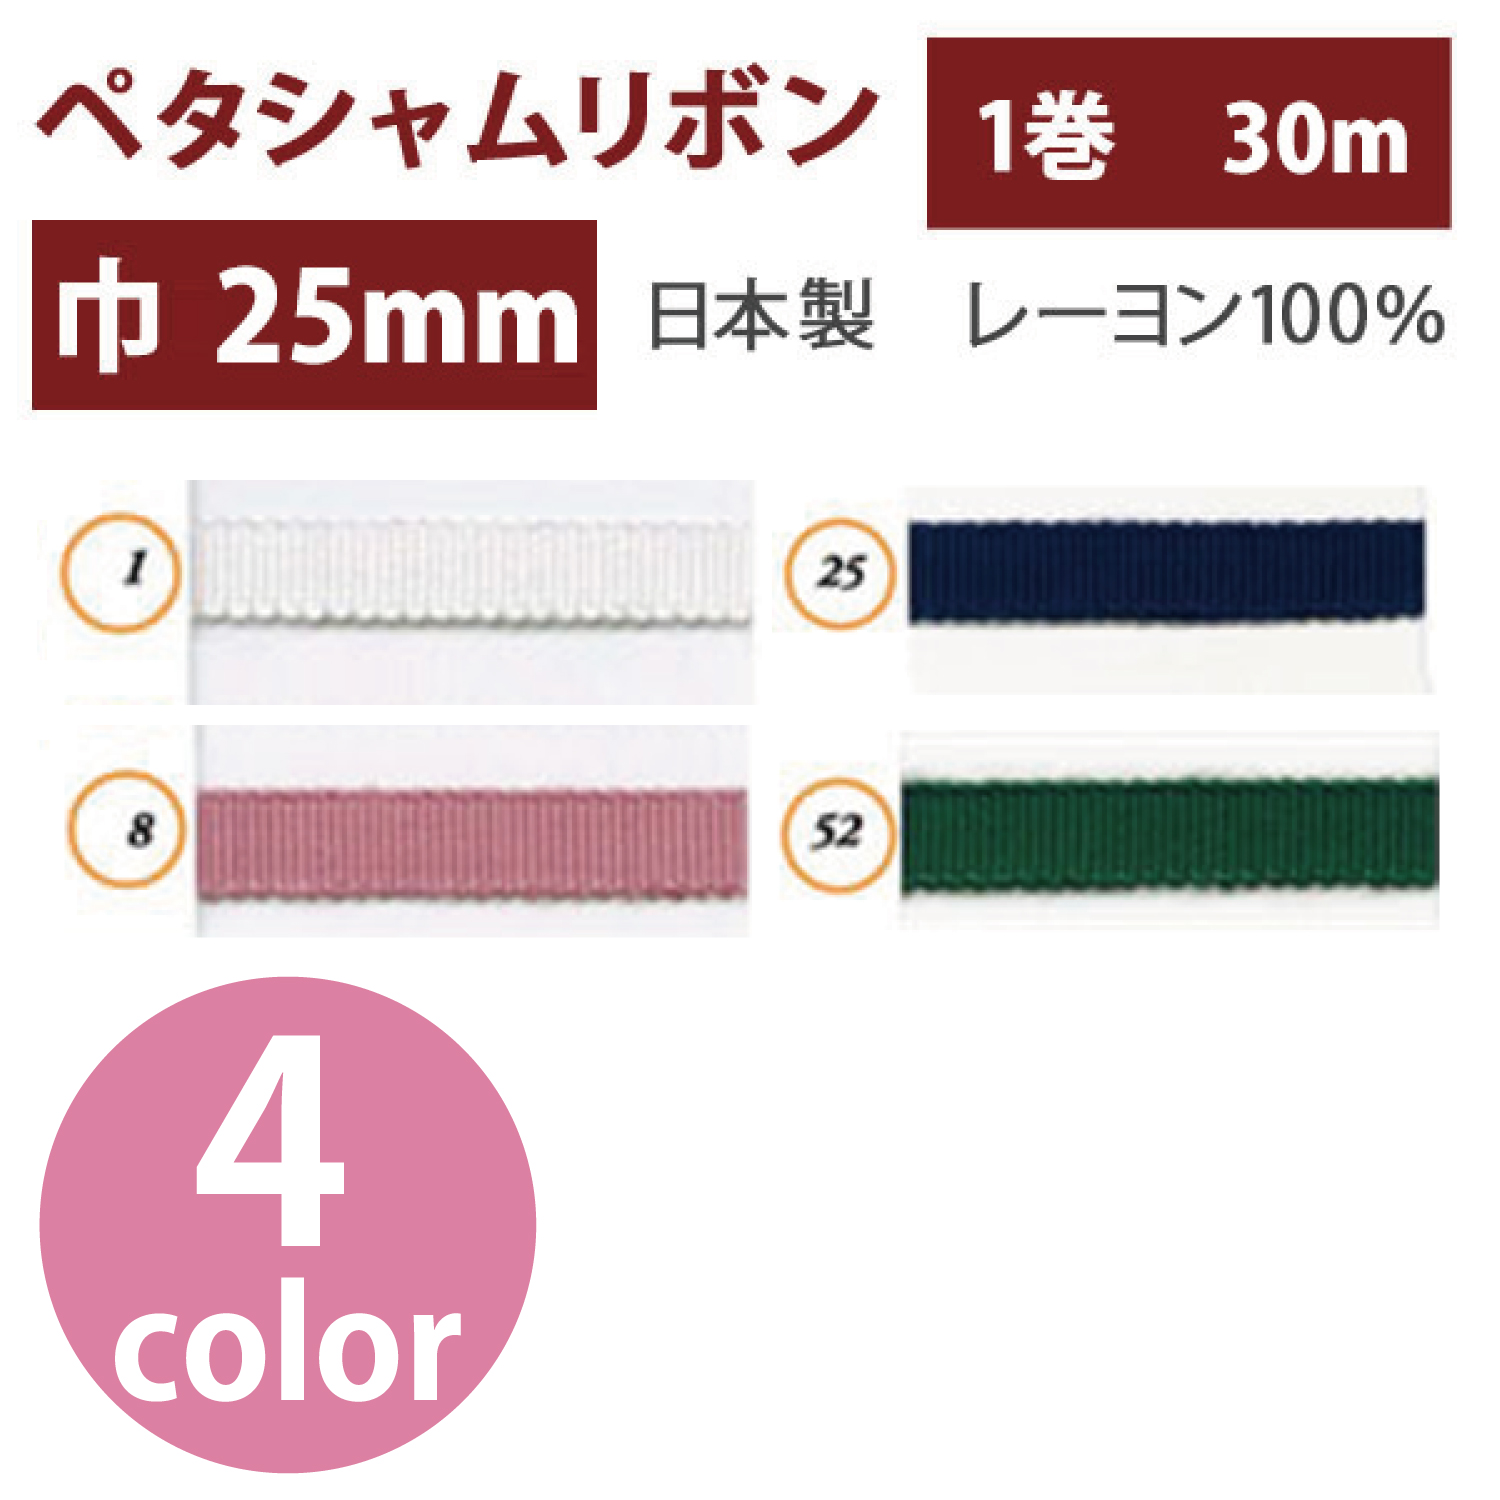 【数量限定特価】SIC100-25MM-30M ペタシャムリボン 25mm巾×30m (巻)